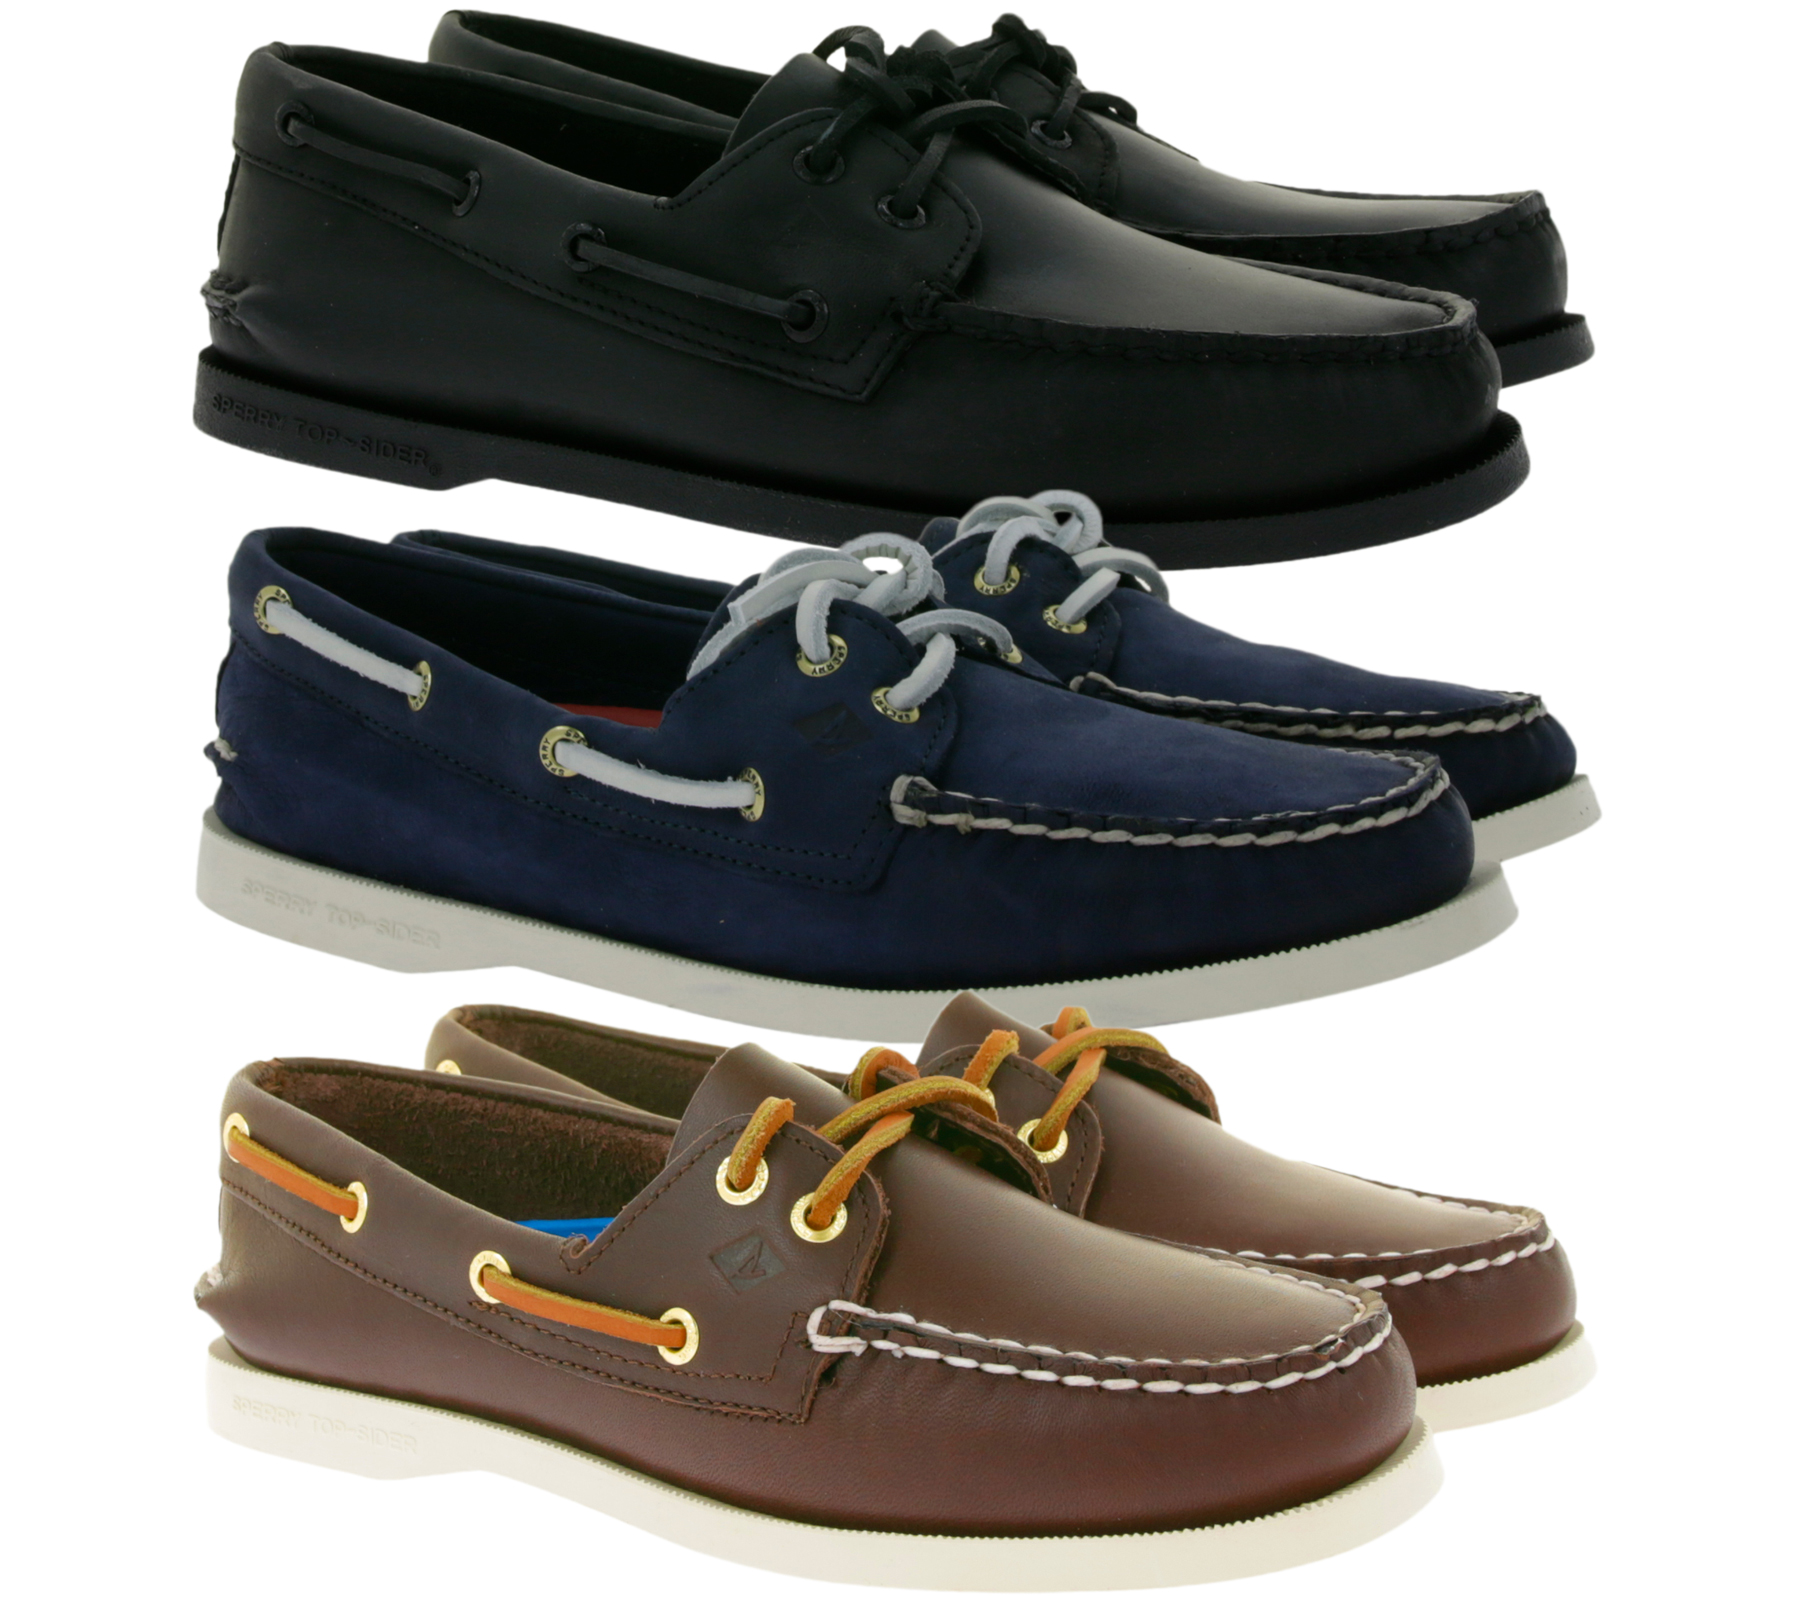 SPERRY Authentic Original 2-Eye Segel-Schuhe aus Echtleder Boots-Schuhe in Braun, Schwarz oder Blau von SPERRY